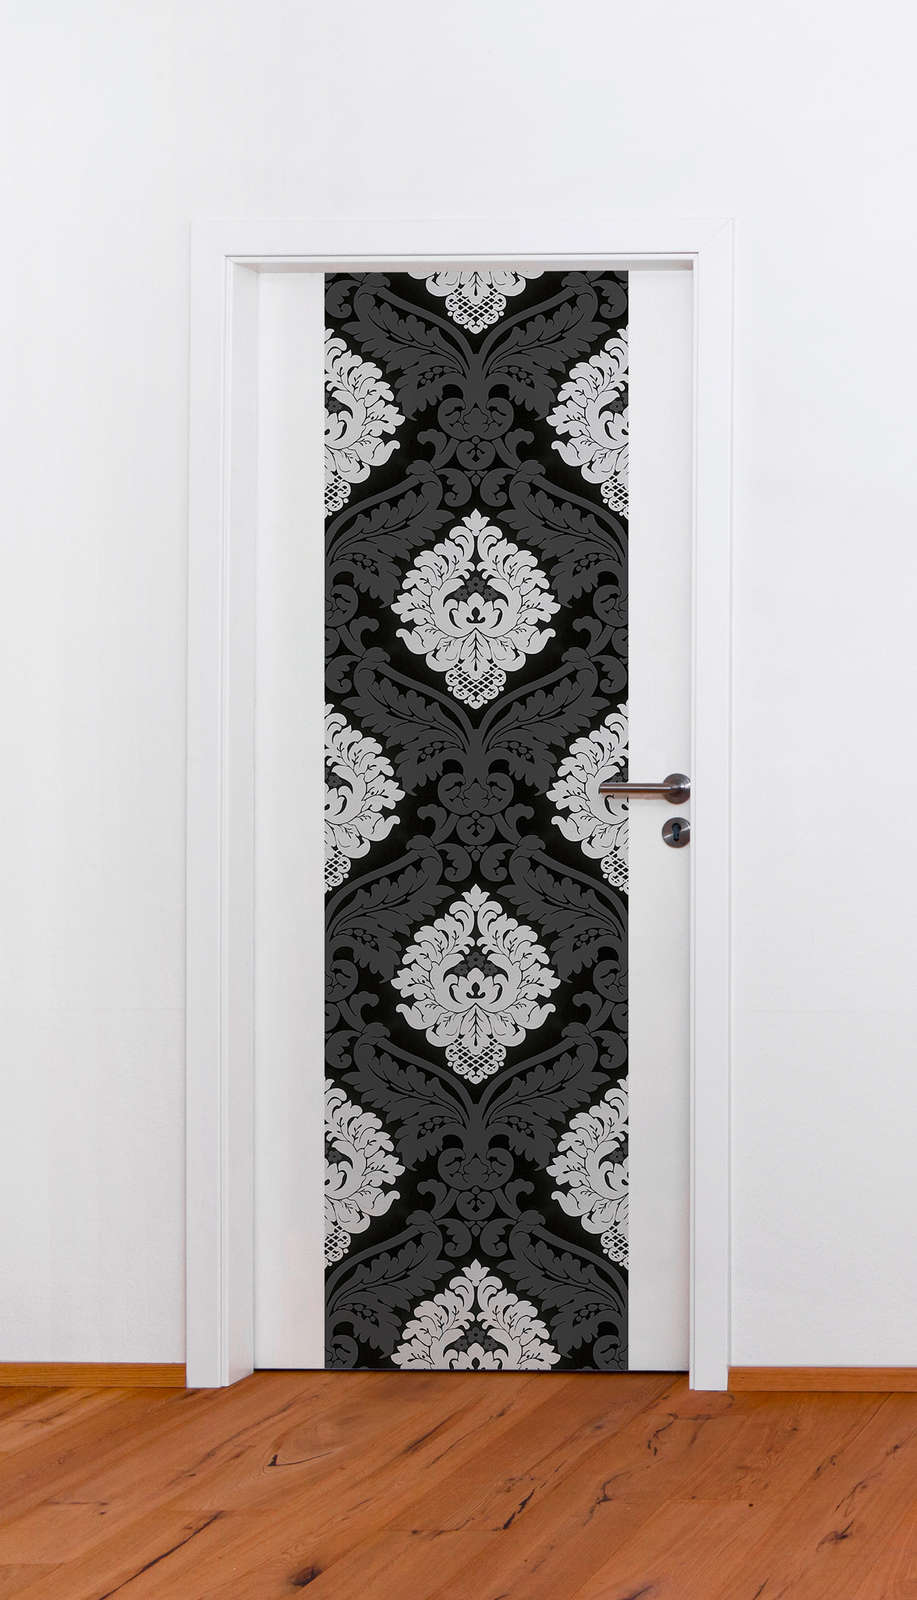             Barok behang zwart-wit met mat-glanseffect
        